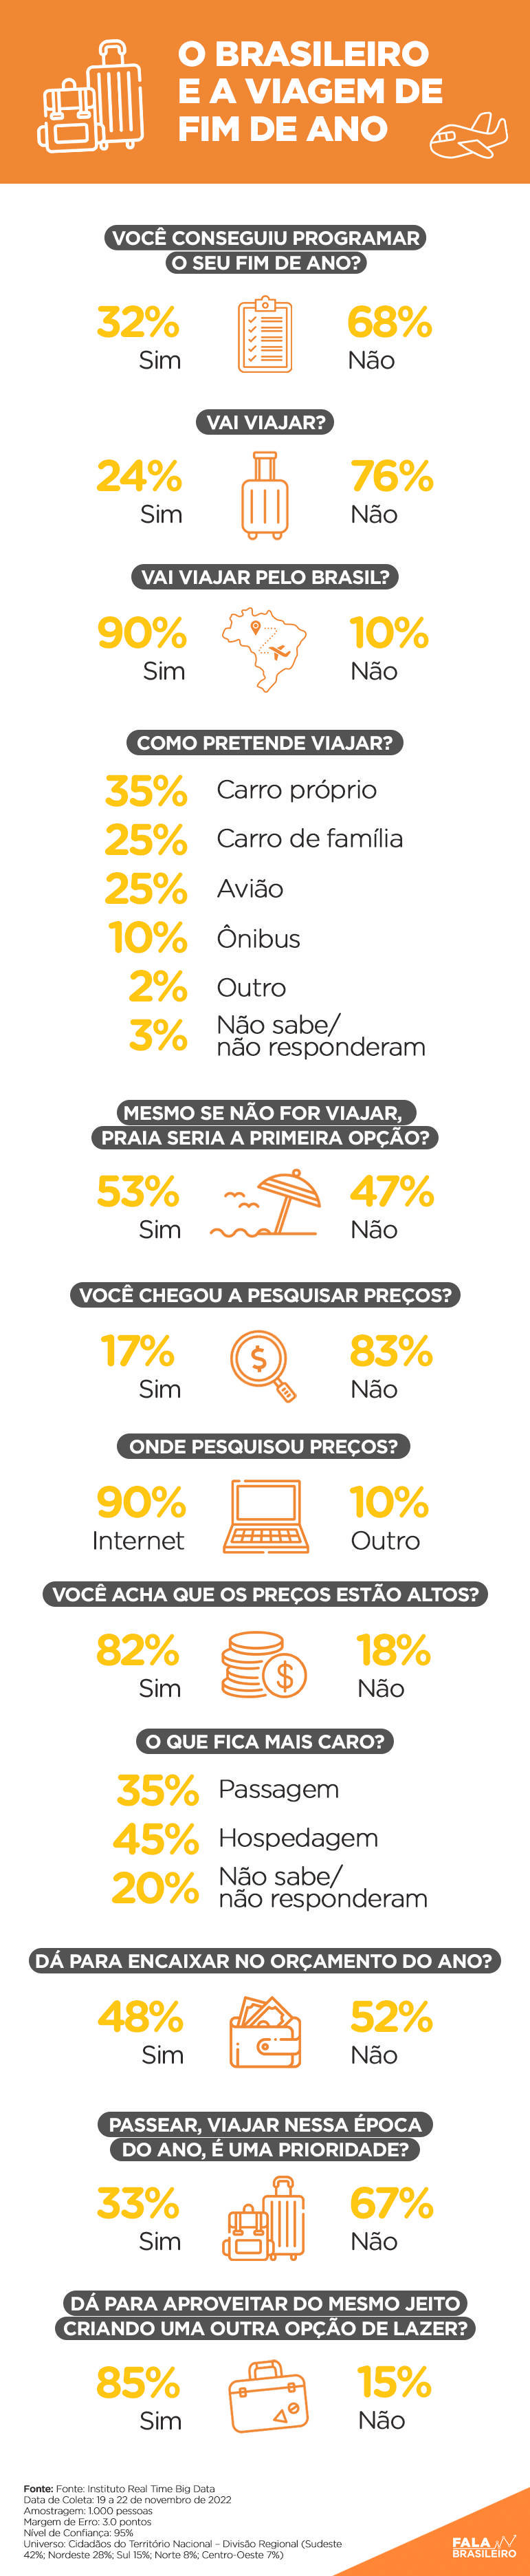 Segundo pesquisa, maioria dos brasileiros vai ficar em casa no fim do ano